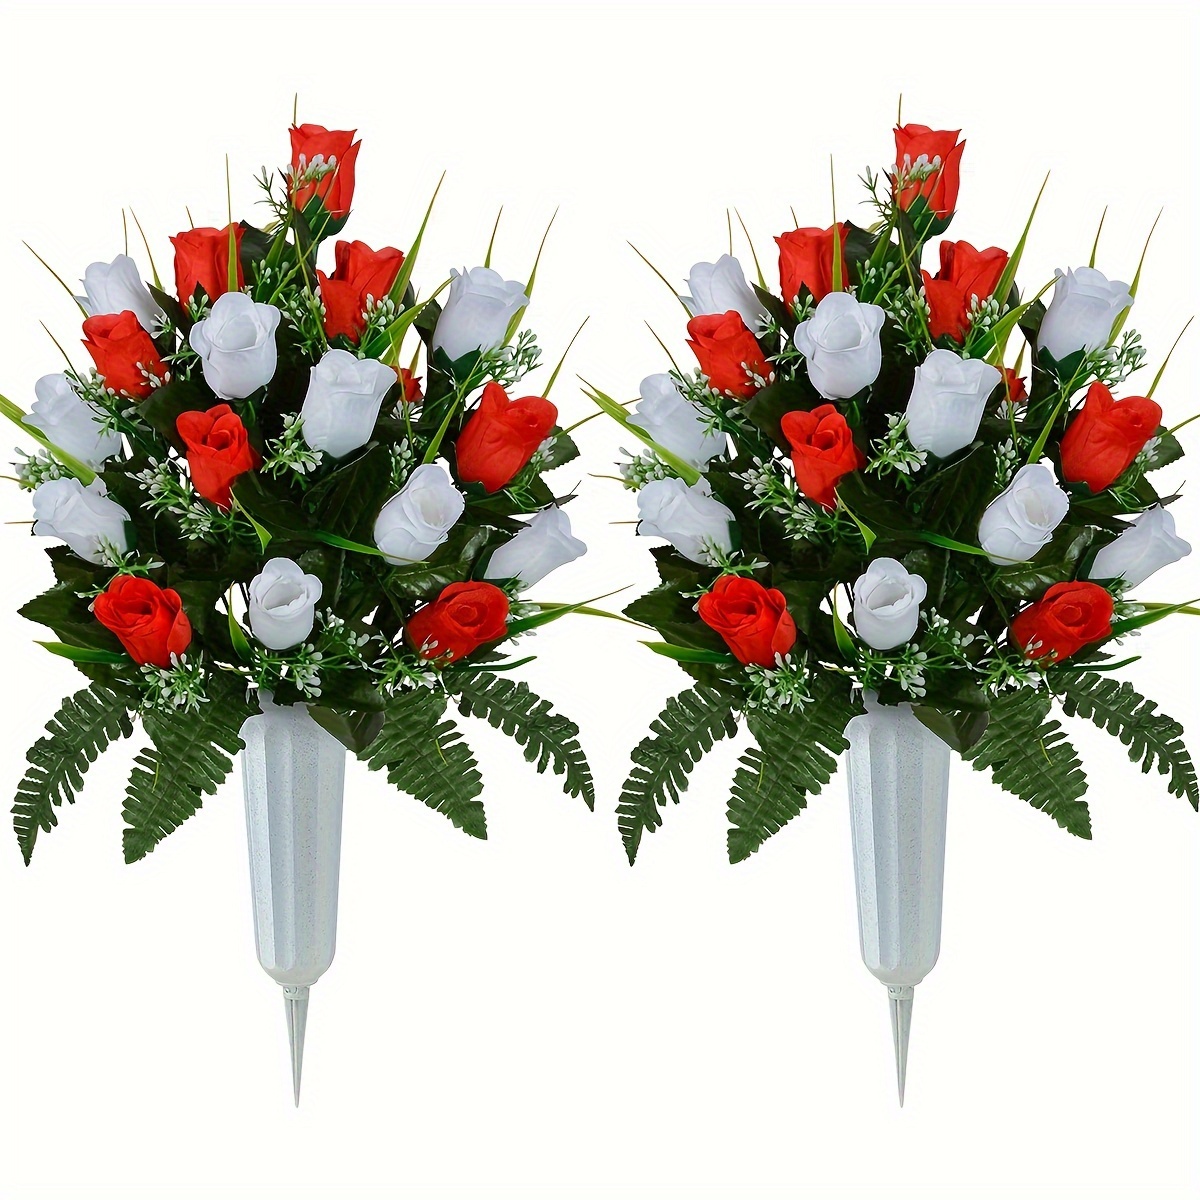 

Ensemble de fleurs artificielles pour mémorial de cimetière, décoration de tombe avec des roses pour l'extérieur, bouquet de fleurs pour arrangement floral sur pierre tombale (sans vase)